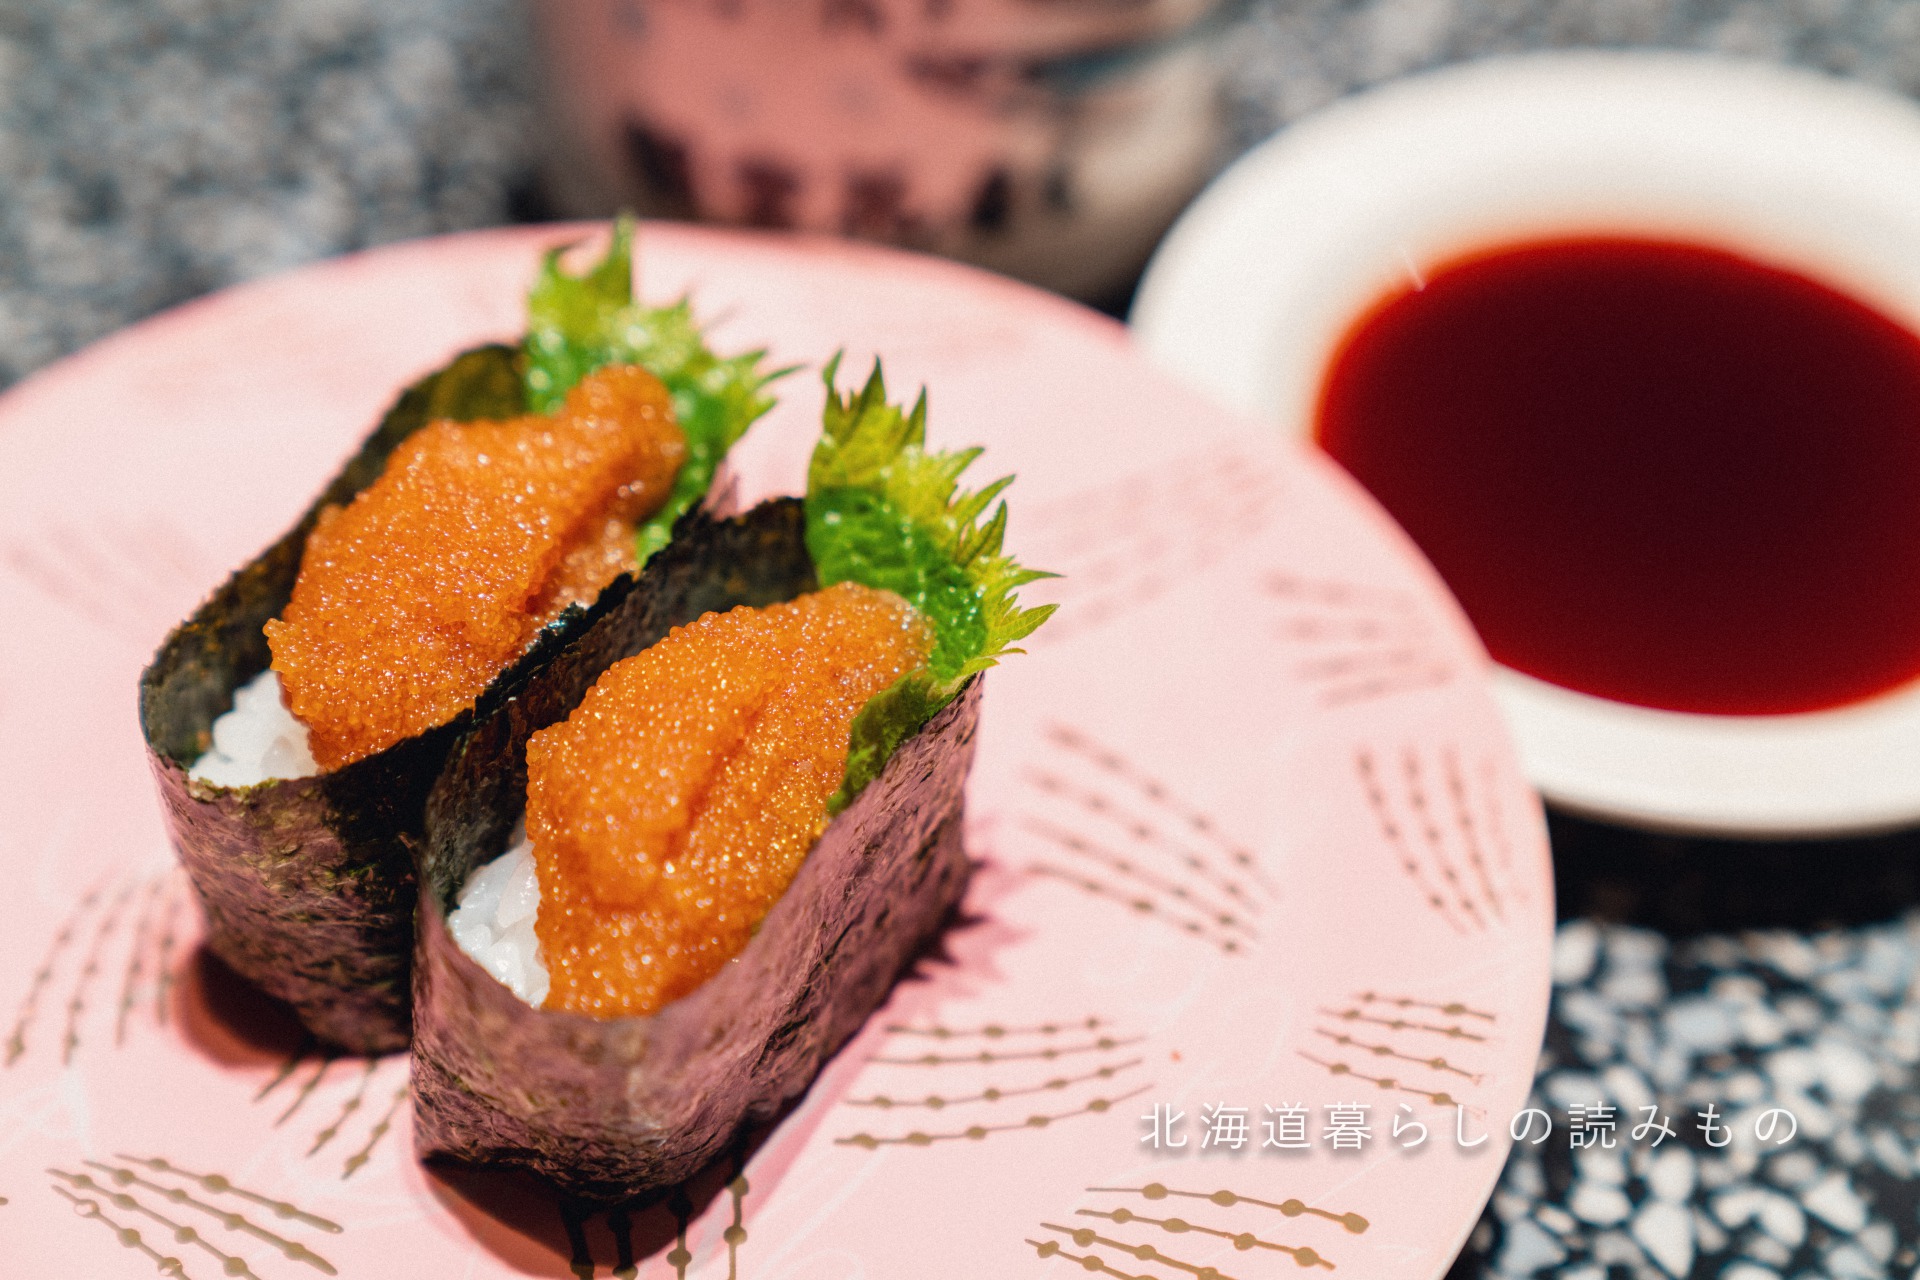 迴轉壽司根室花丸的菜單上的「氷下魚子醤油腌」